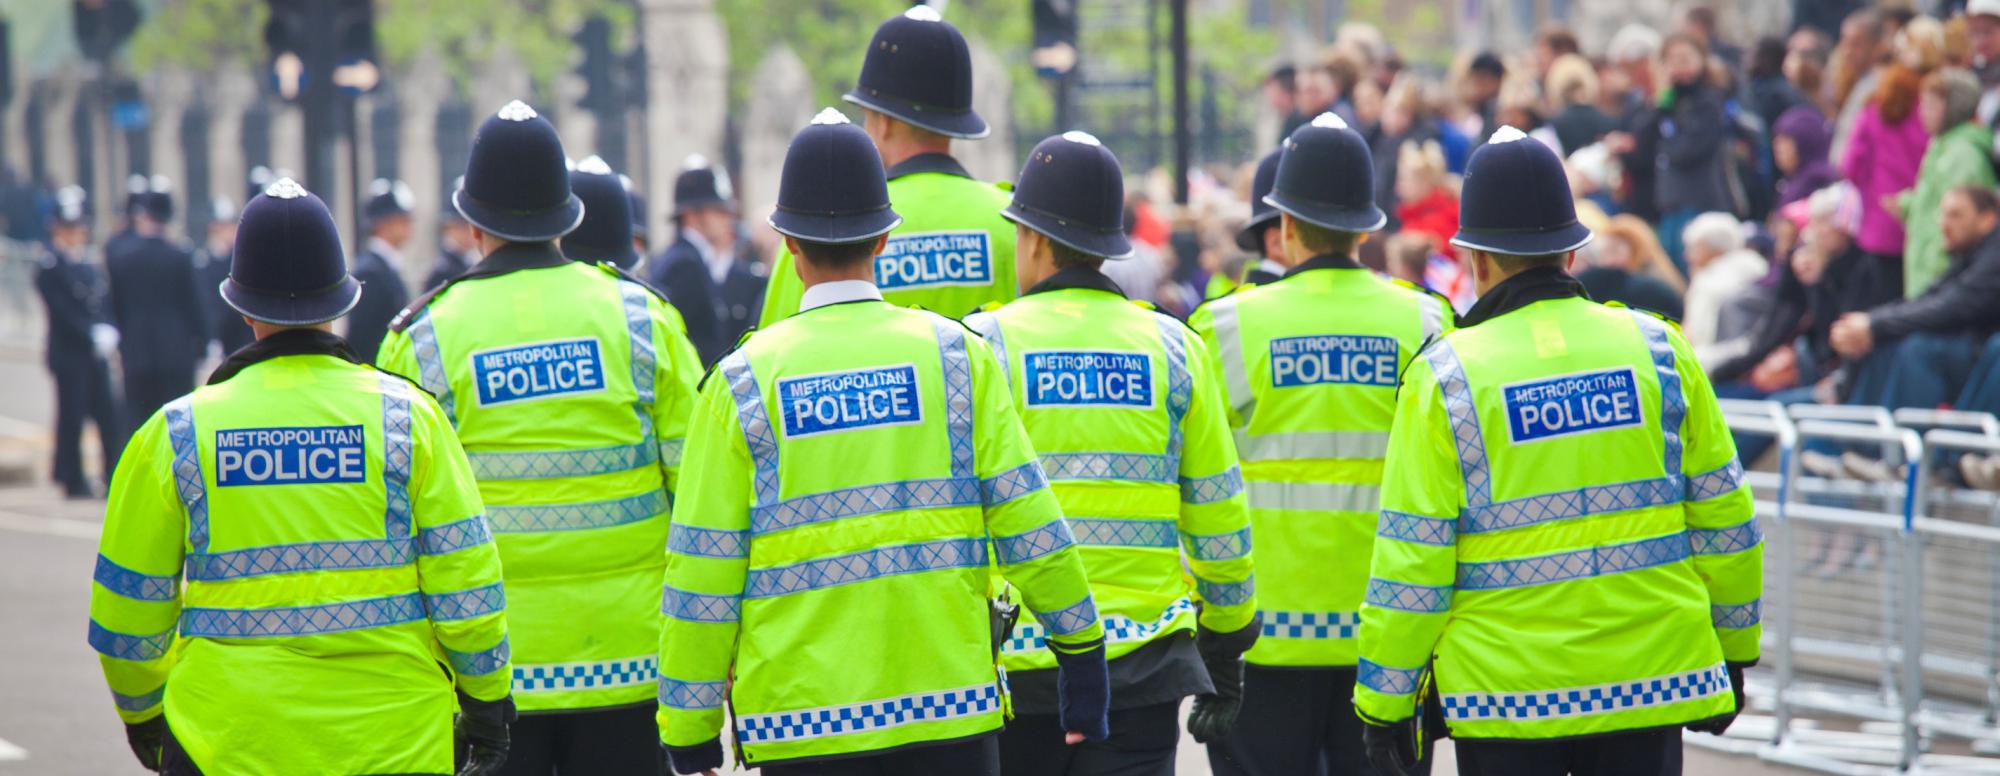 Met-police-london